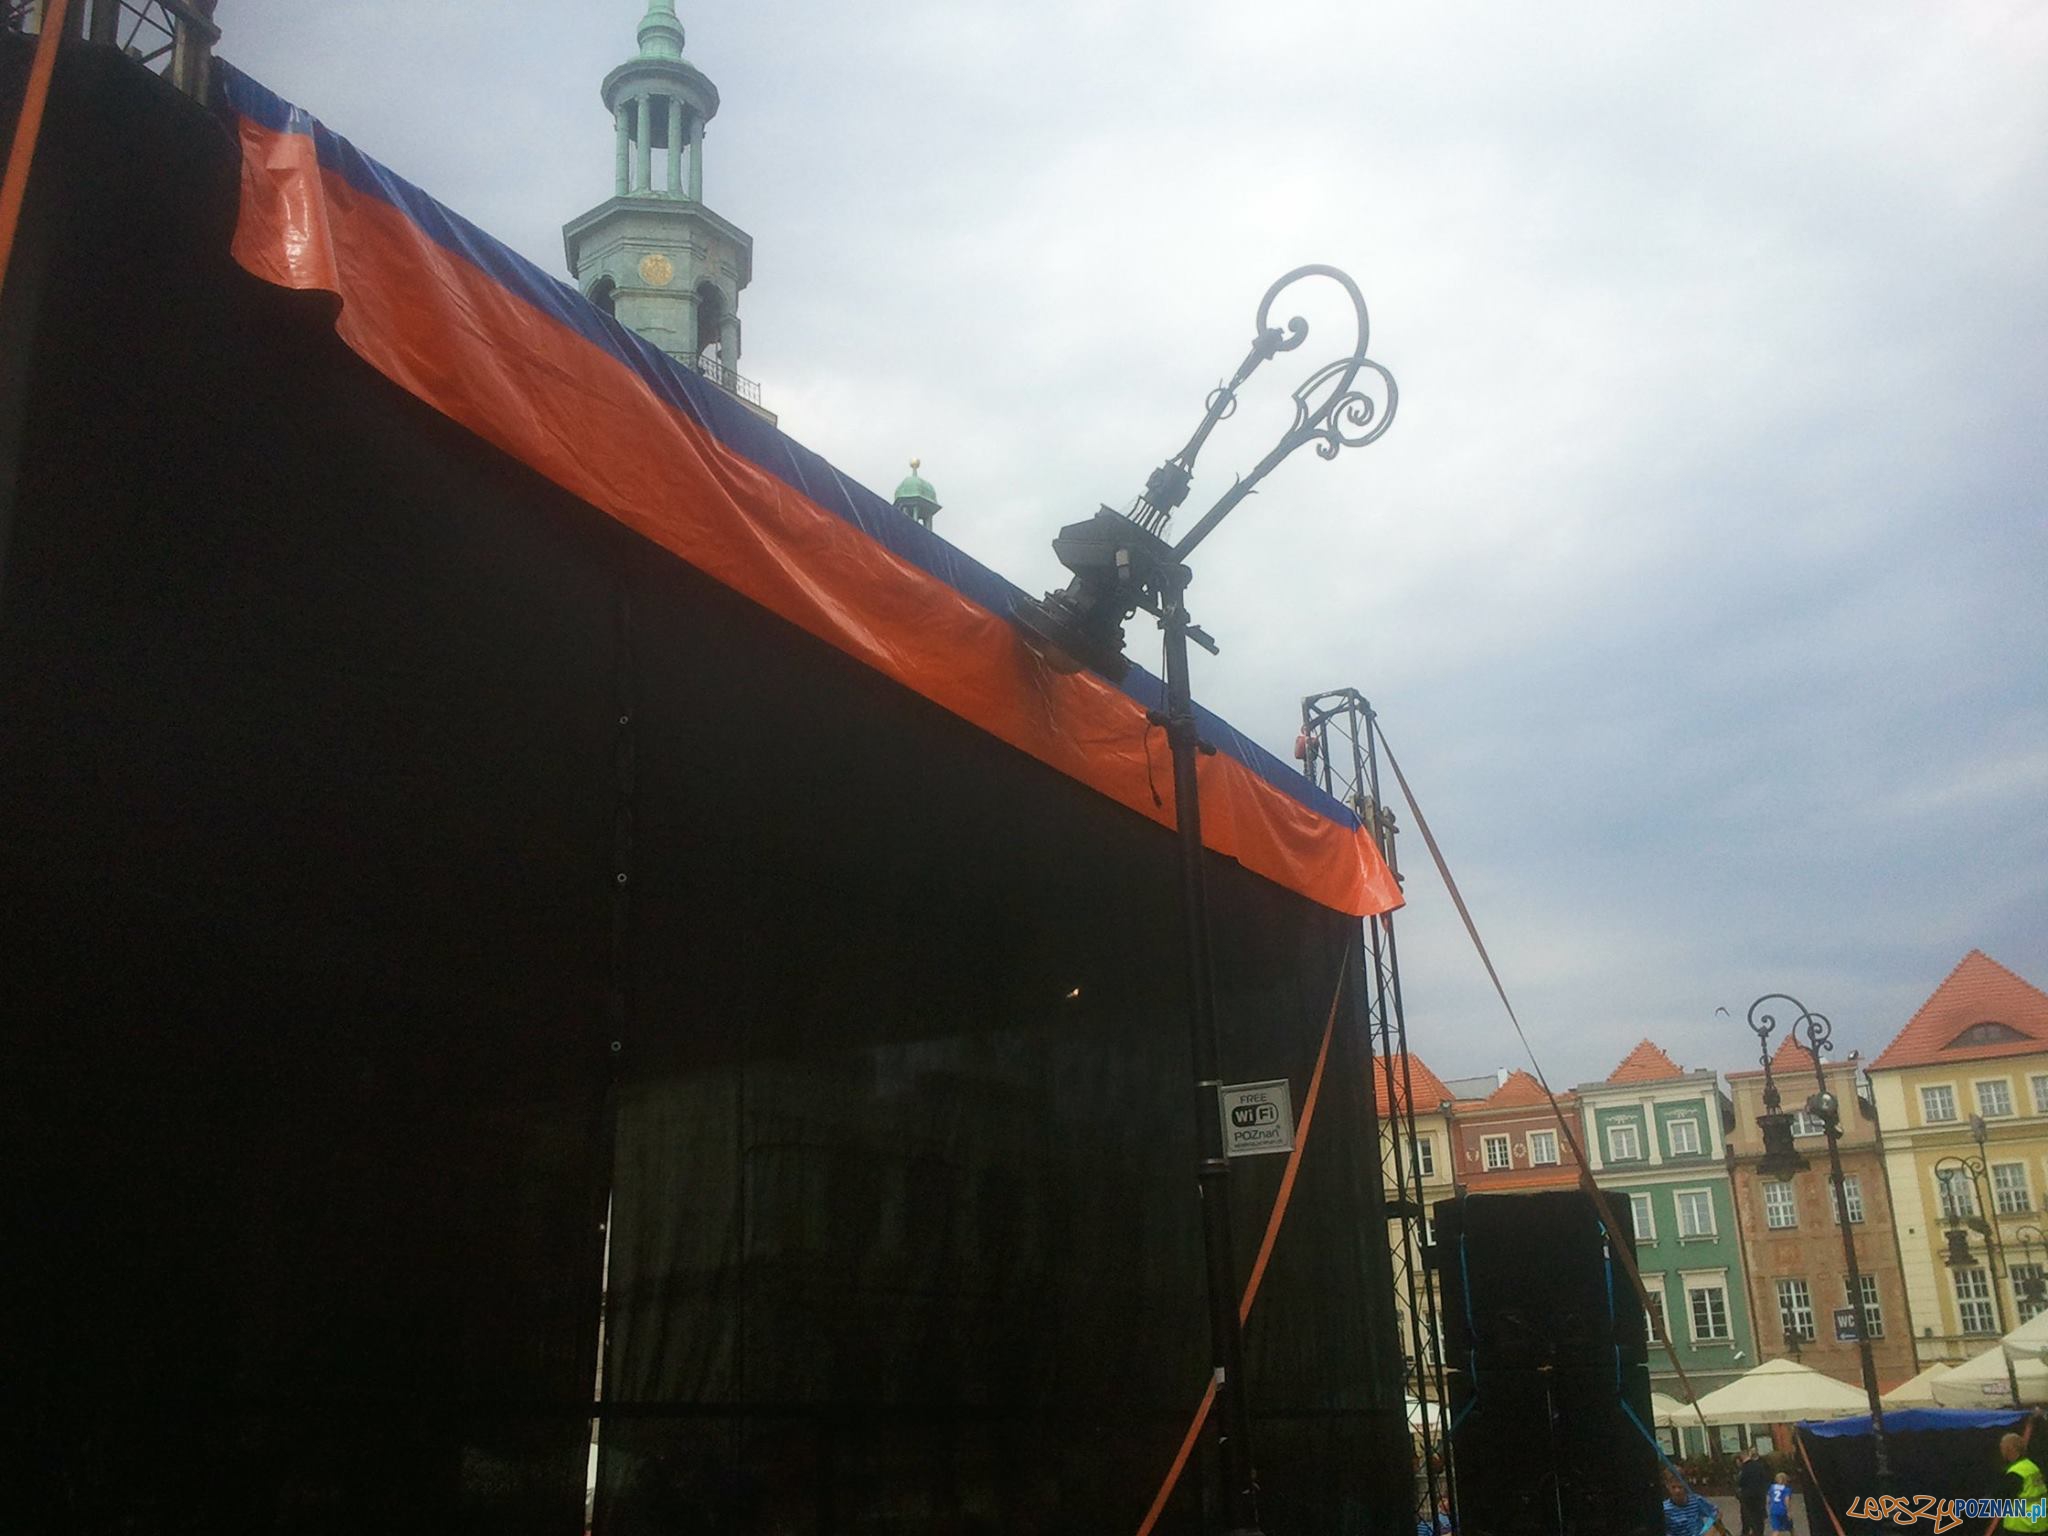 Uszkodzona latarnia na Starym Rynku  Foto: news@lepszypoznan.pl